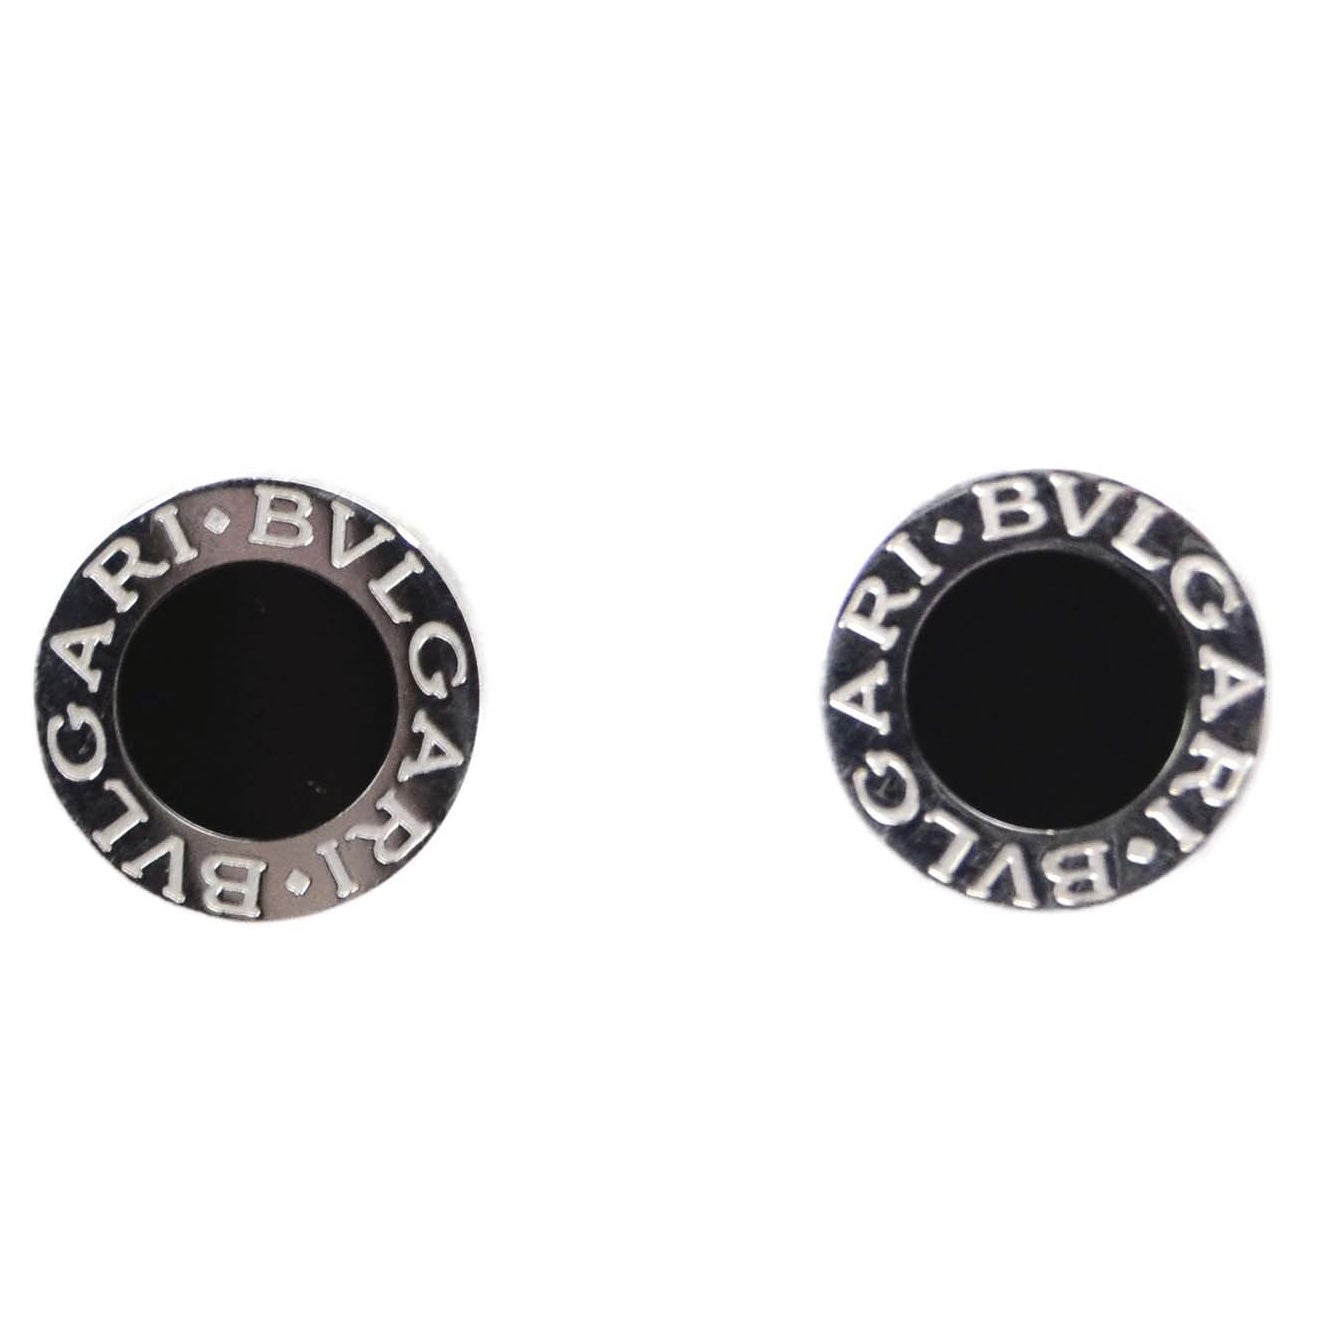 bvlgari black onyx earrings